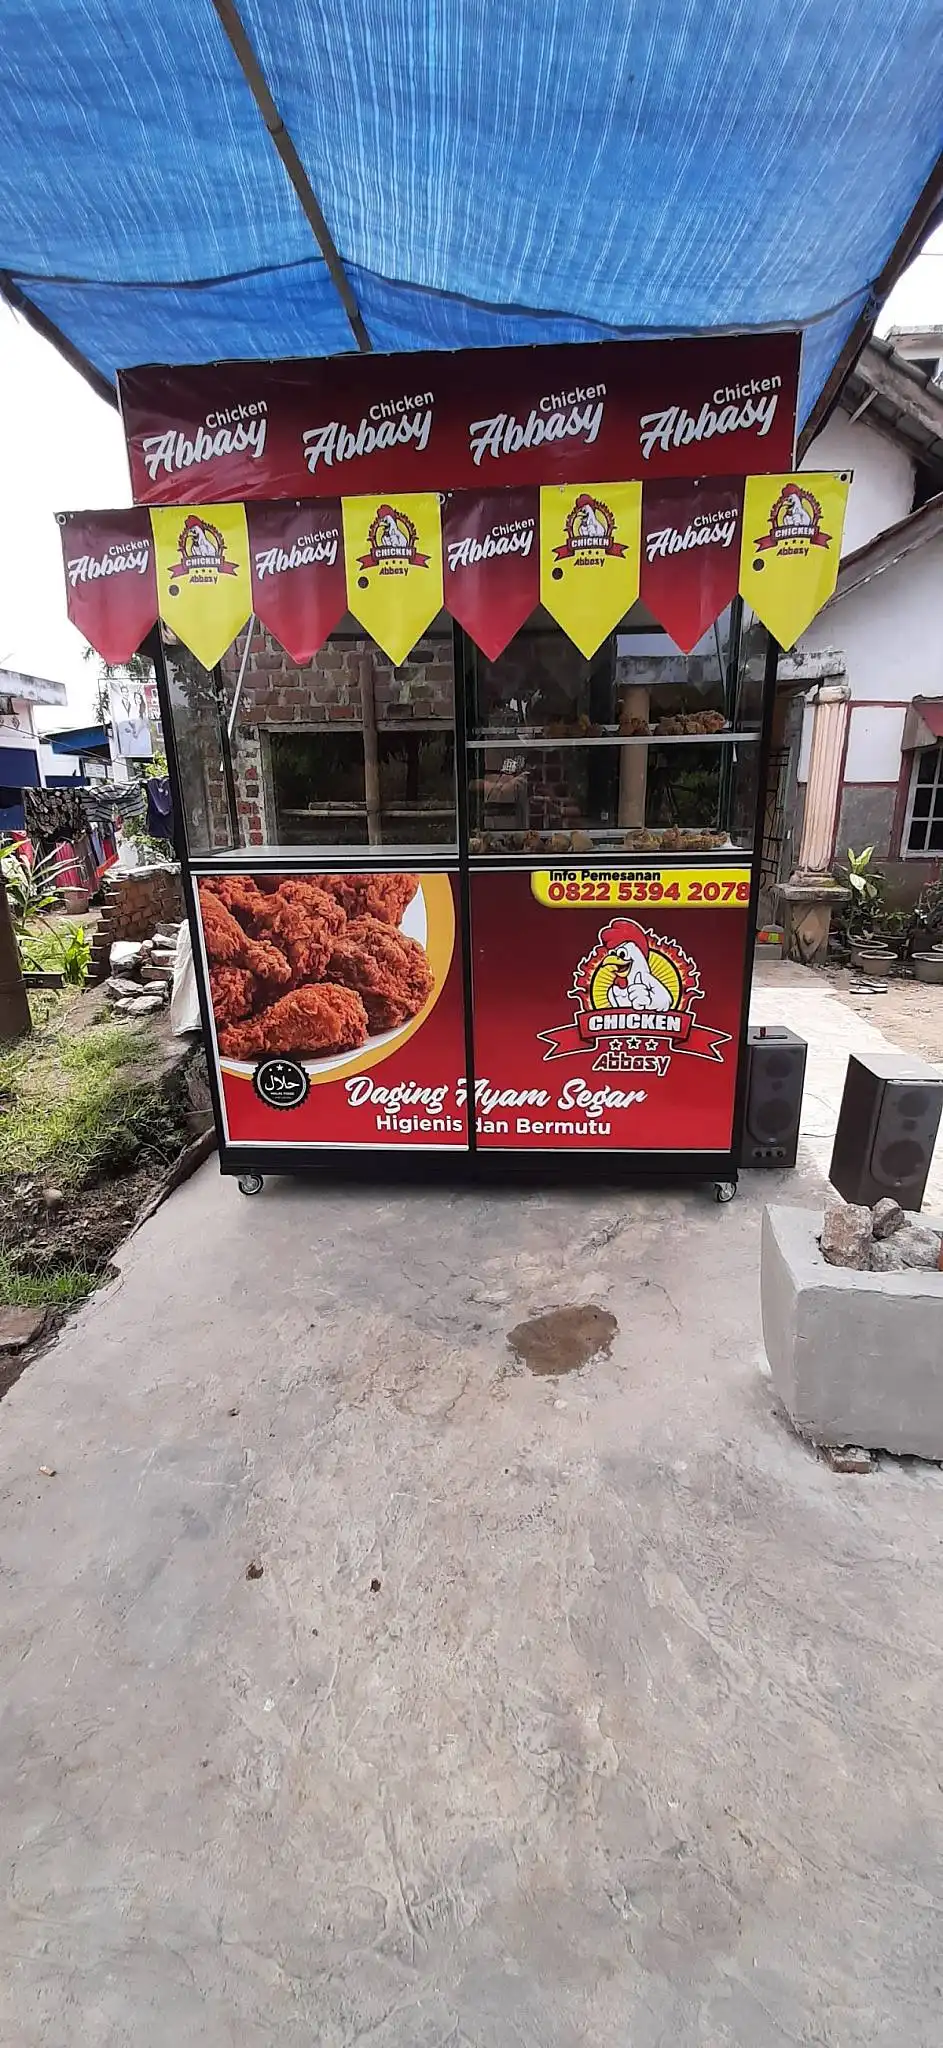 Chicken Abbasy